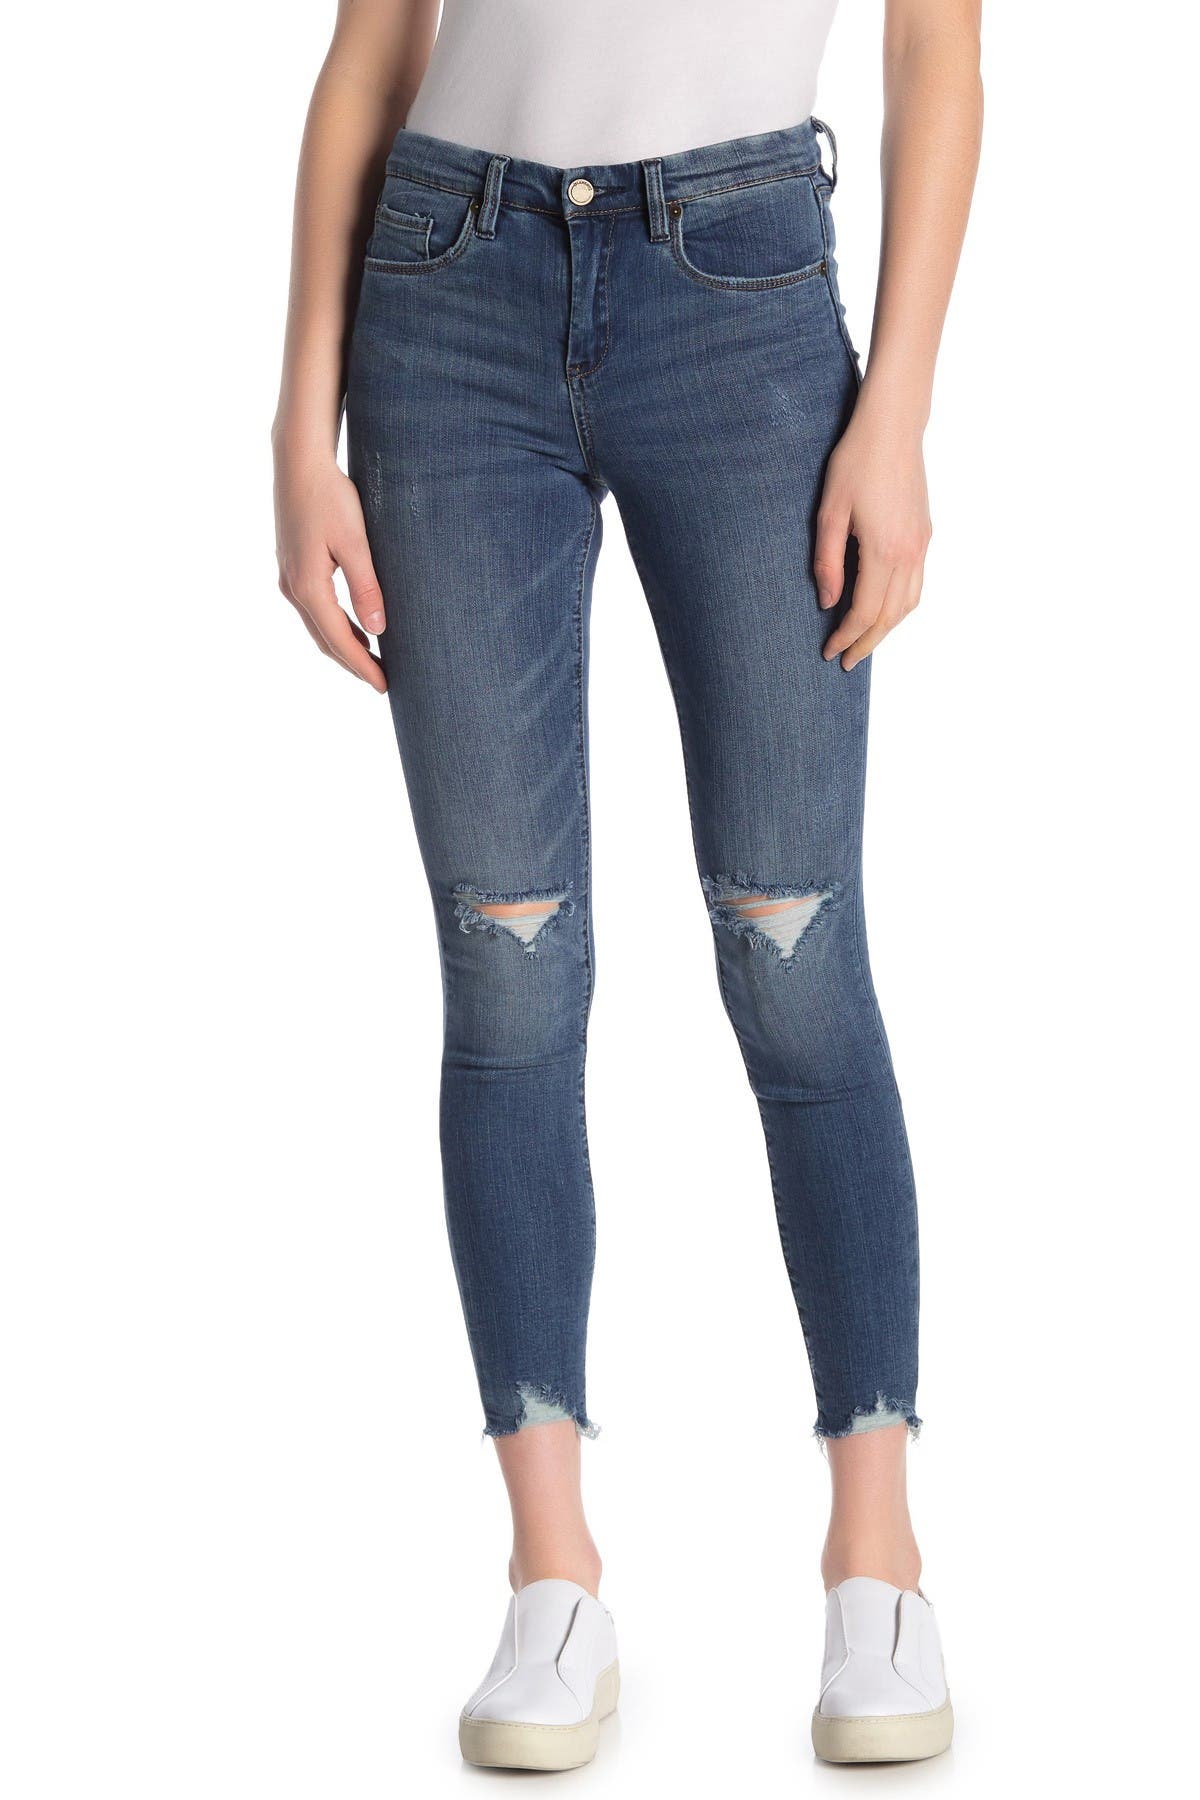 blanknyc skinny jeans